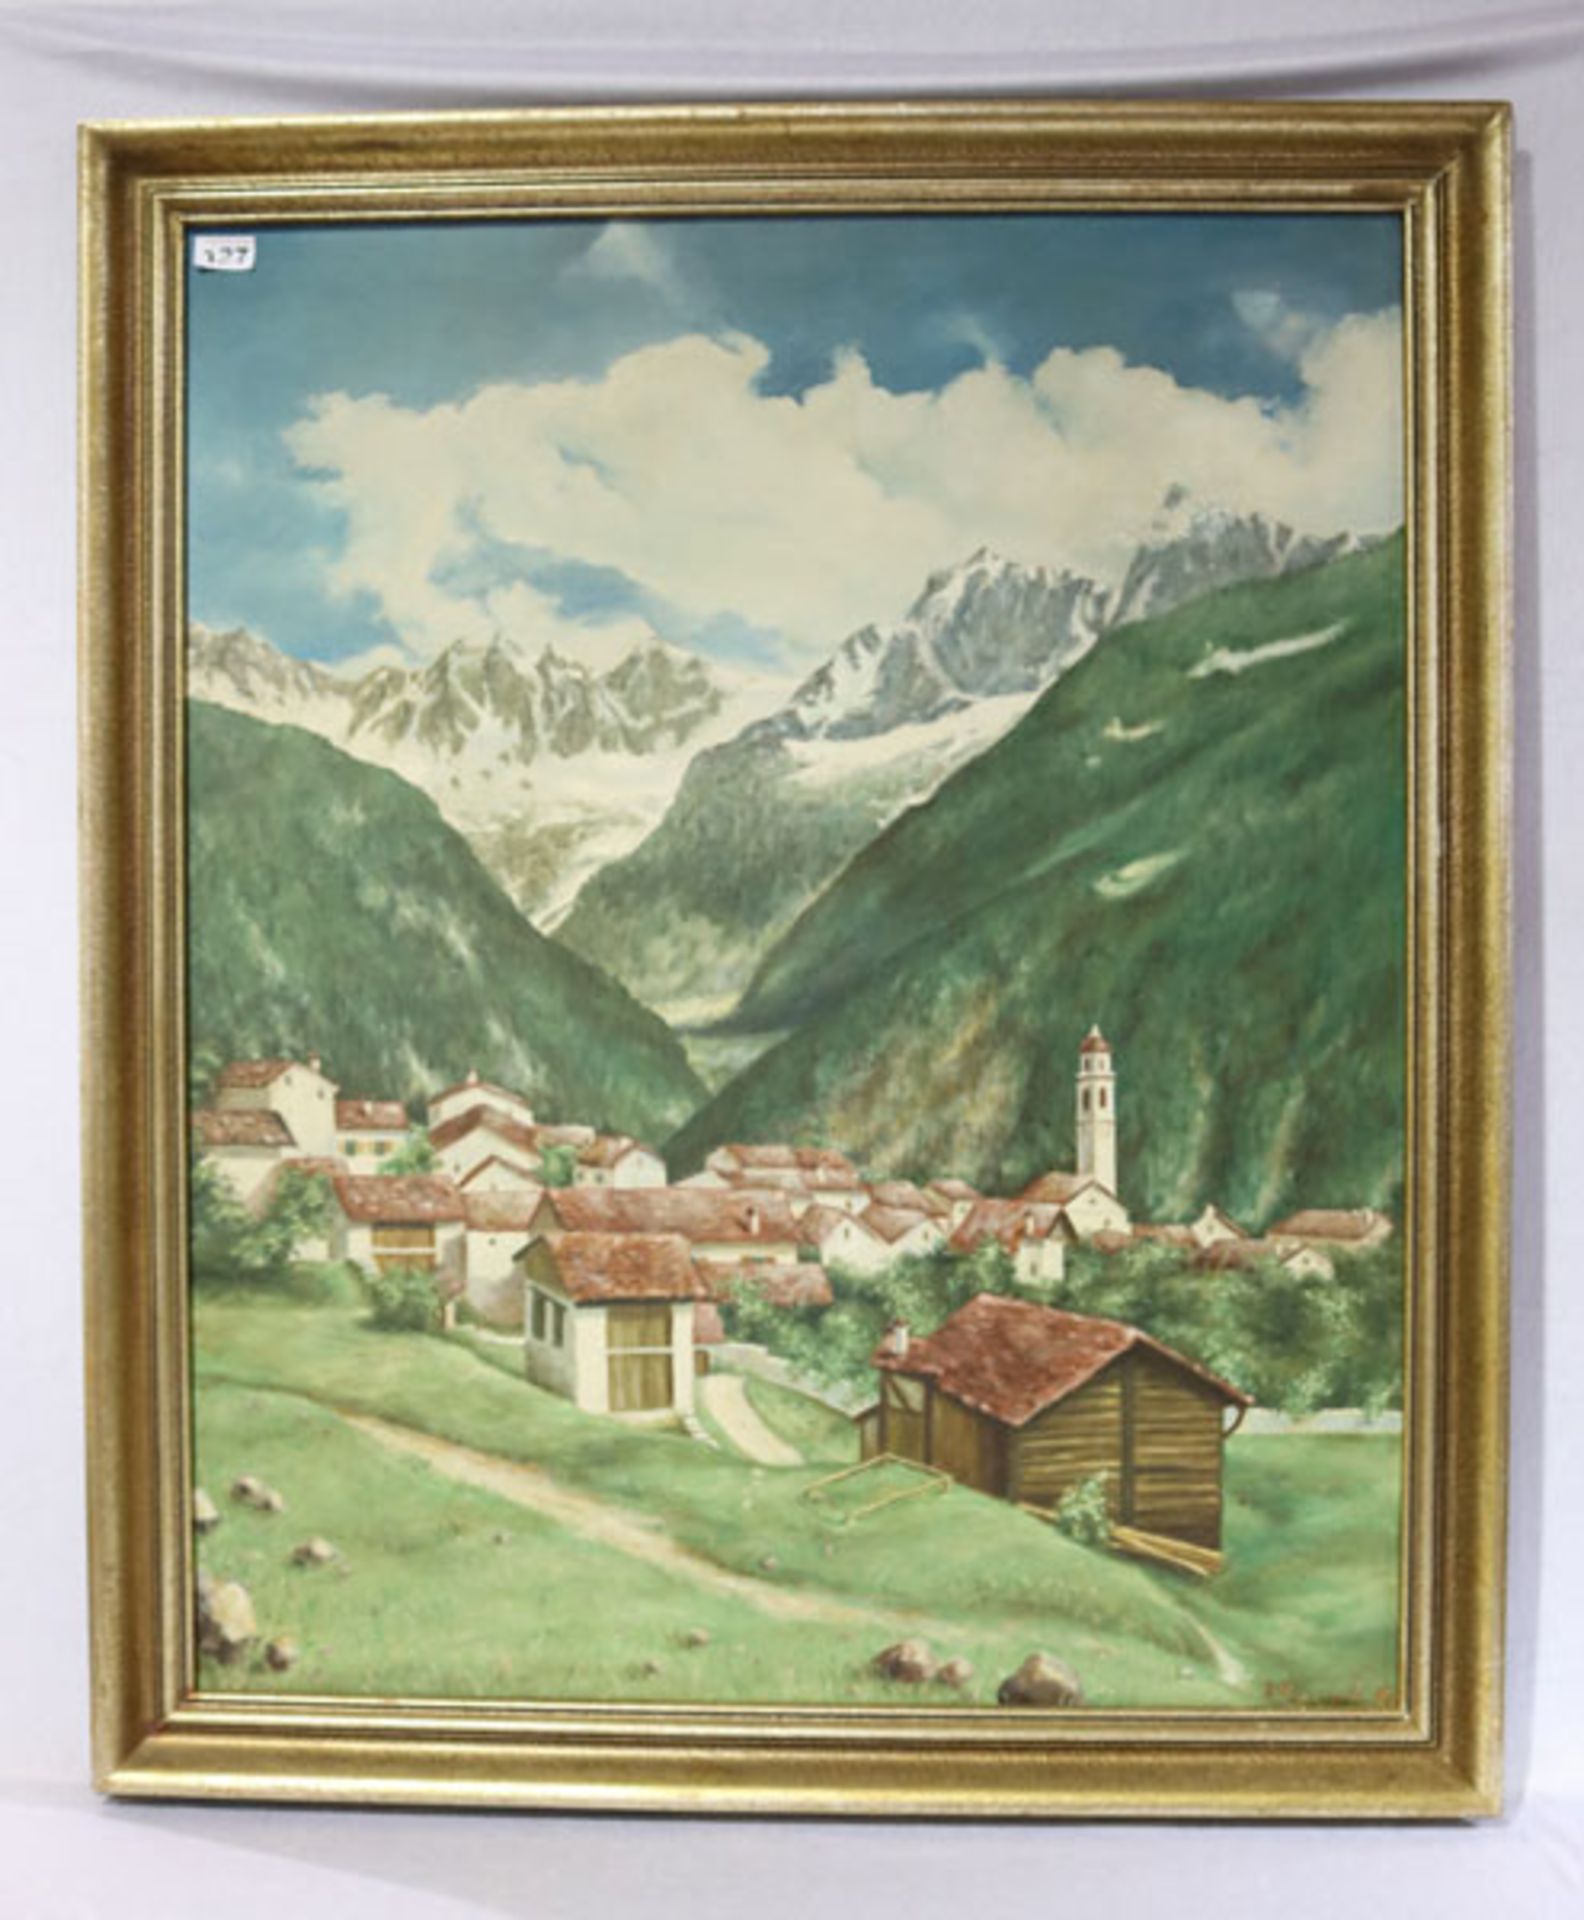 Gemälde ÖL/LW 'Dorf im Hochgebirge', undeutlich signiert, gerahmt, Rahmen bestossen, incl. Rahmen